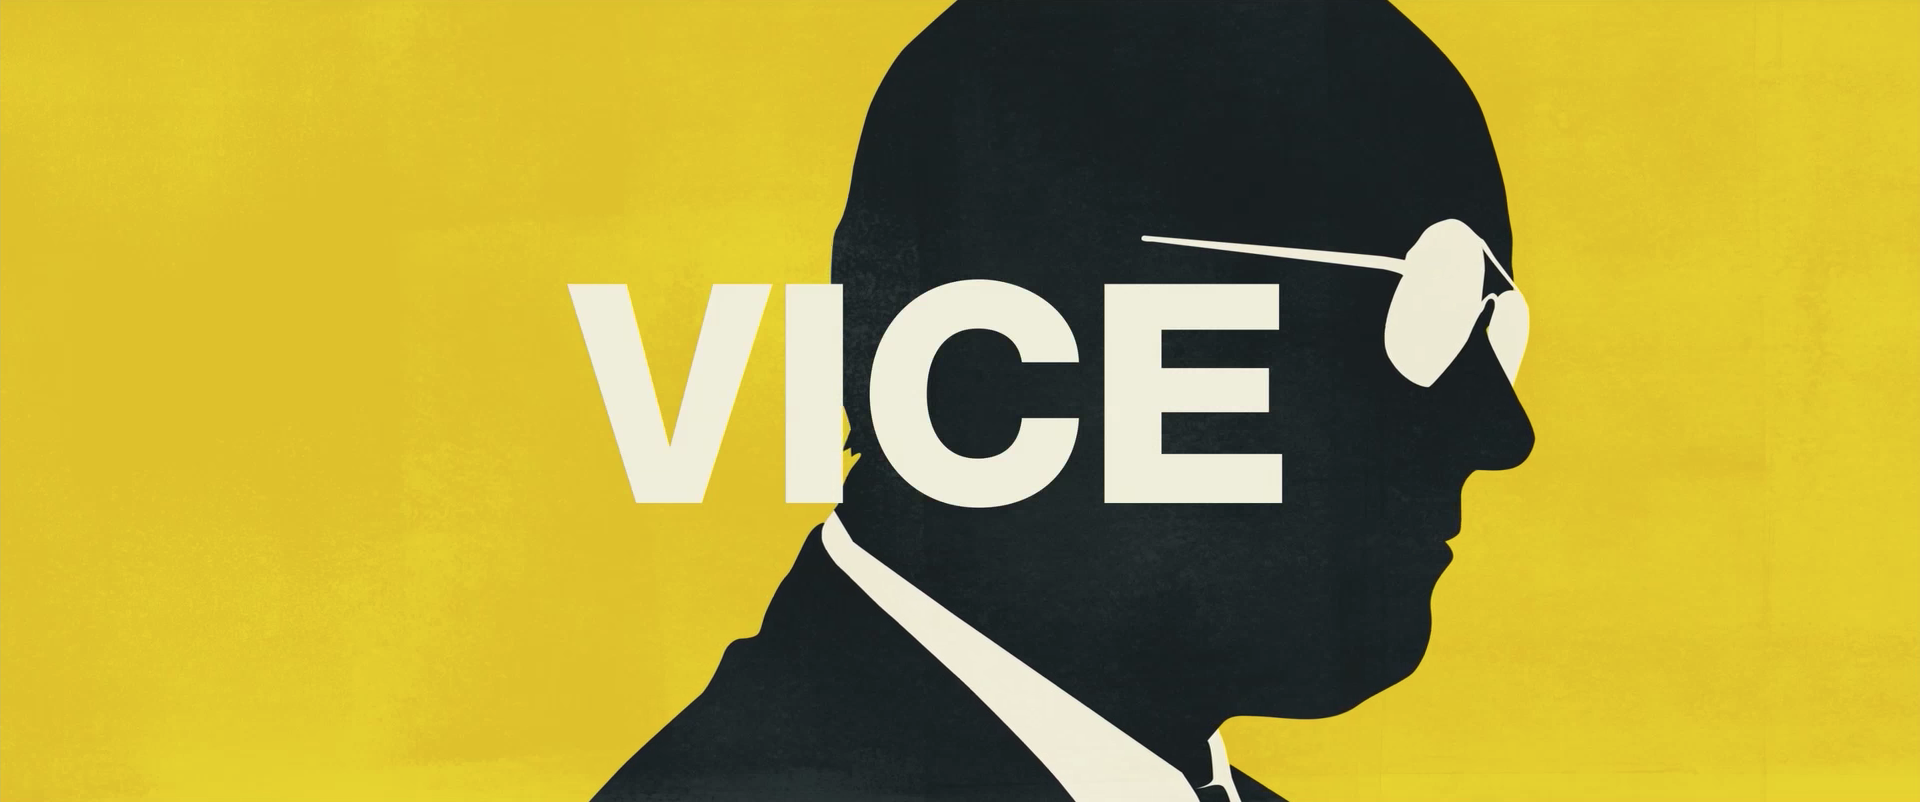 Checa el primer tráiler de ‘Vice’ con Christian Bale sobre la historia política jamás contada...